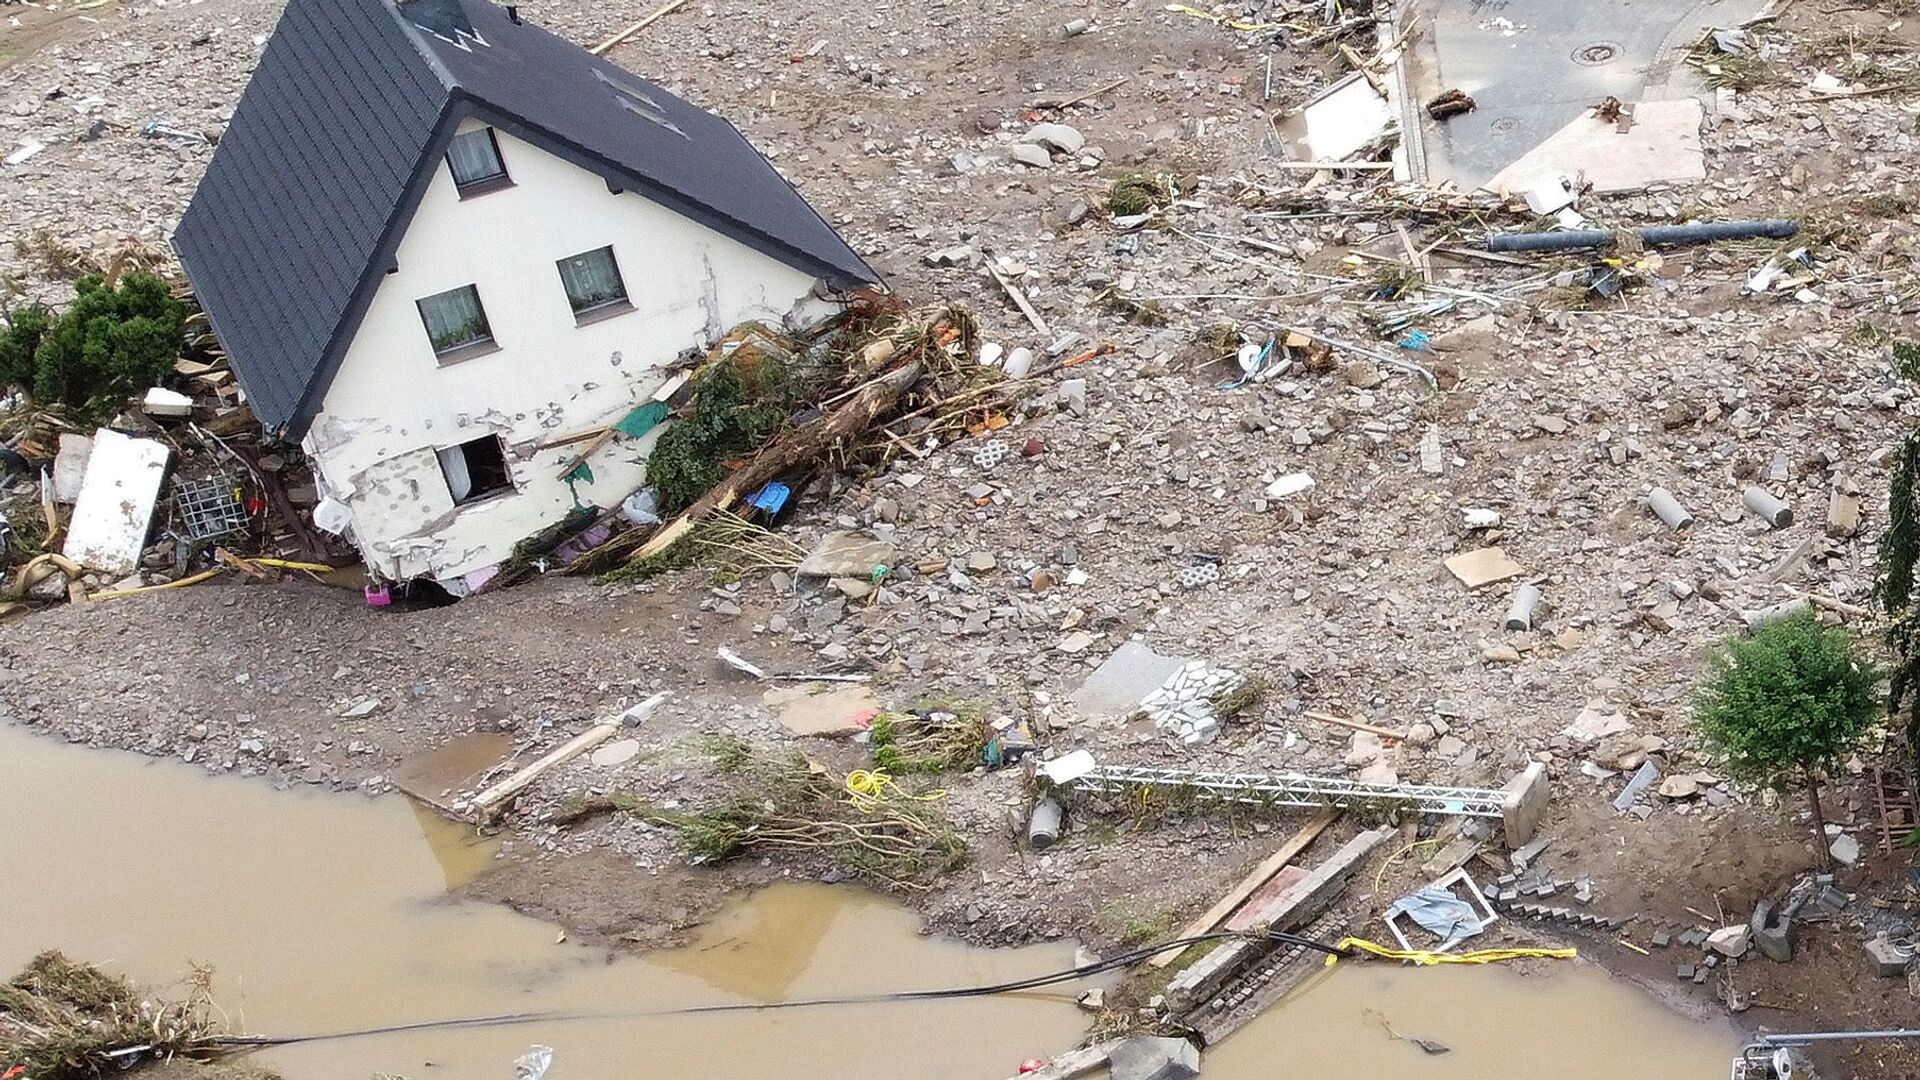 Общий вид зоны, пострадавшей от наводнения после проливных дождей в Шульде, Германия  - Sputnik Тоҷикистон, 1920, 16.07.2021